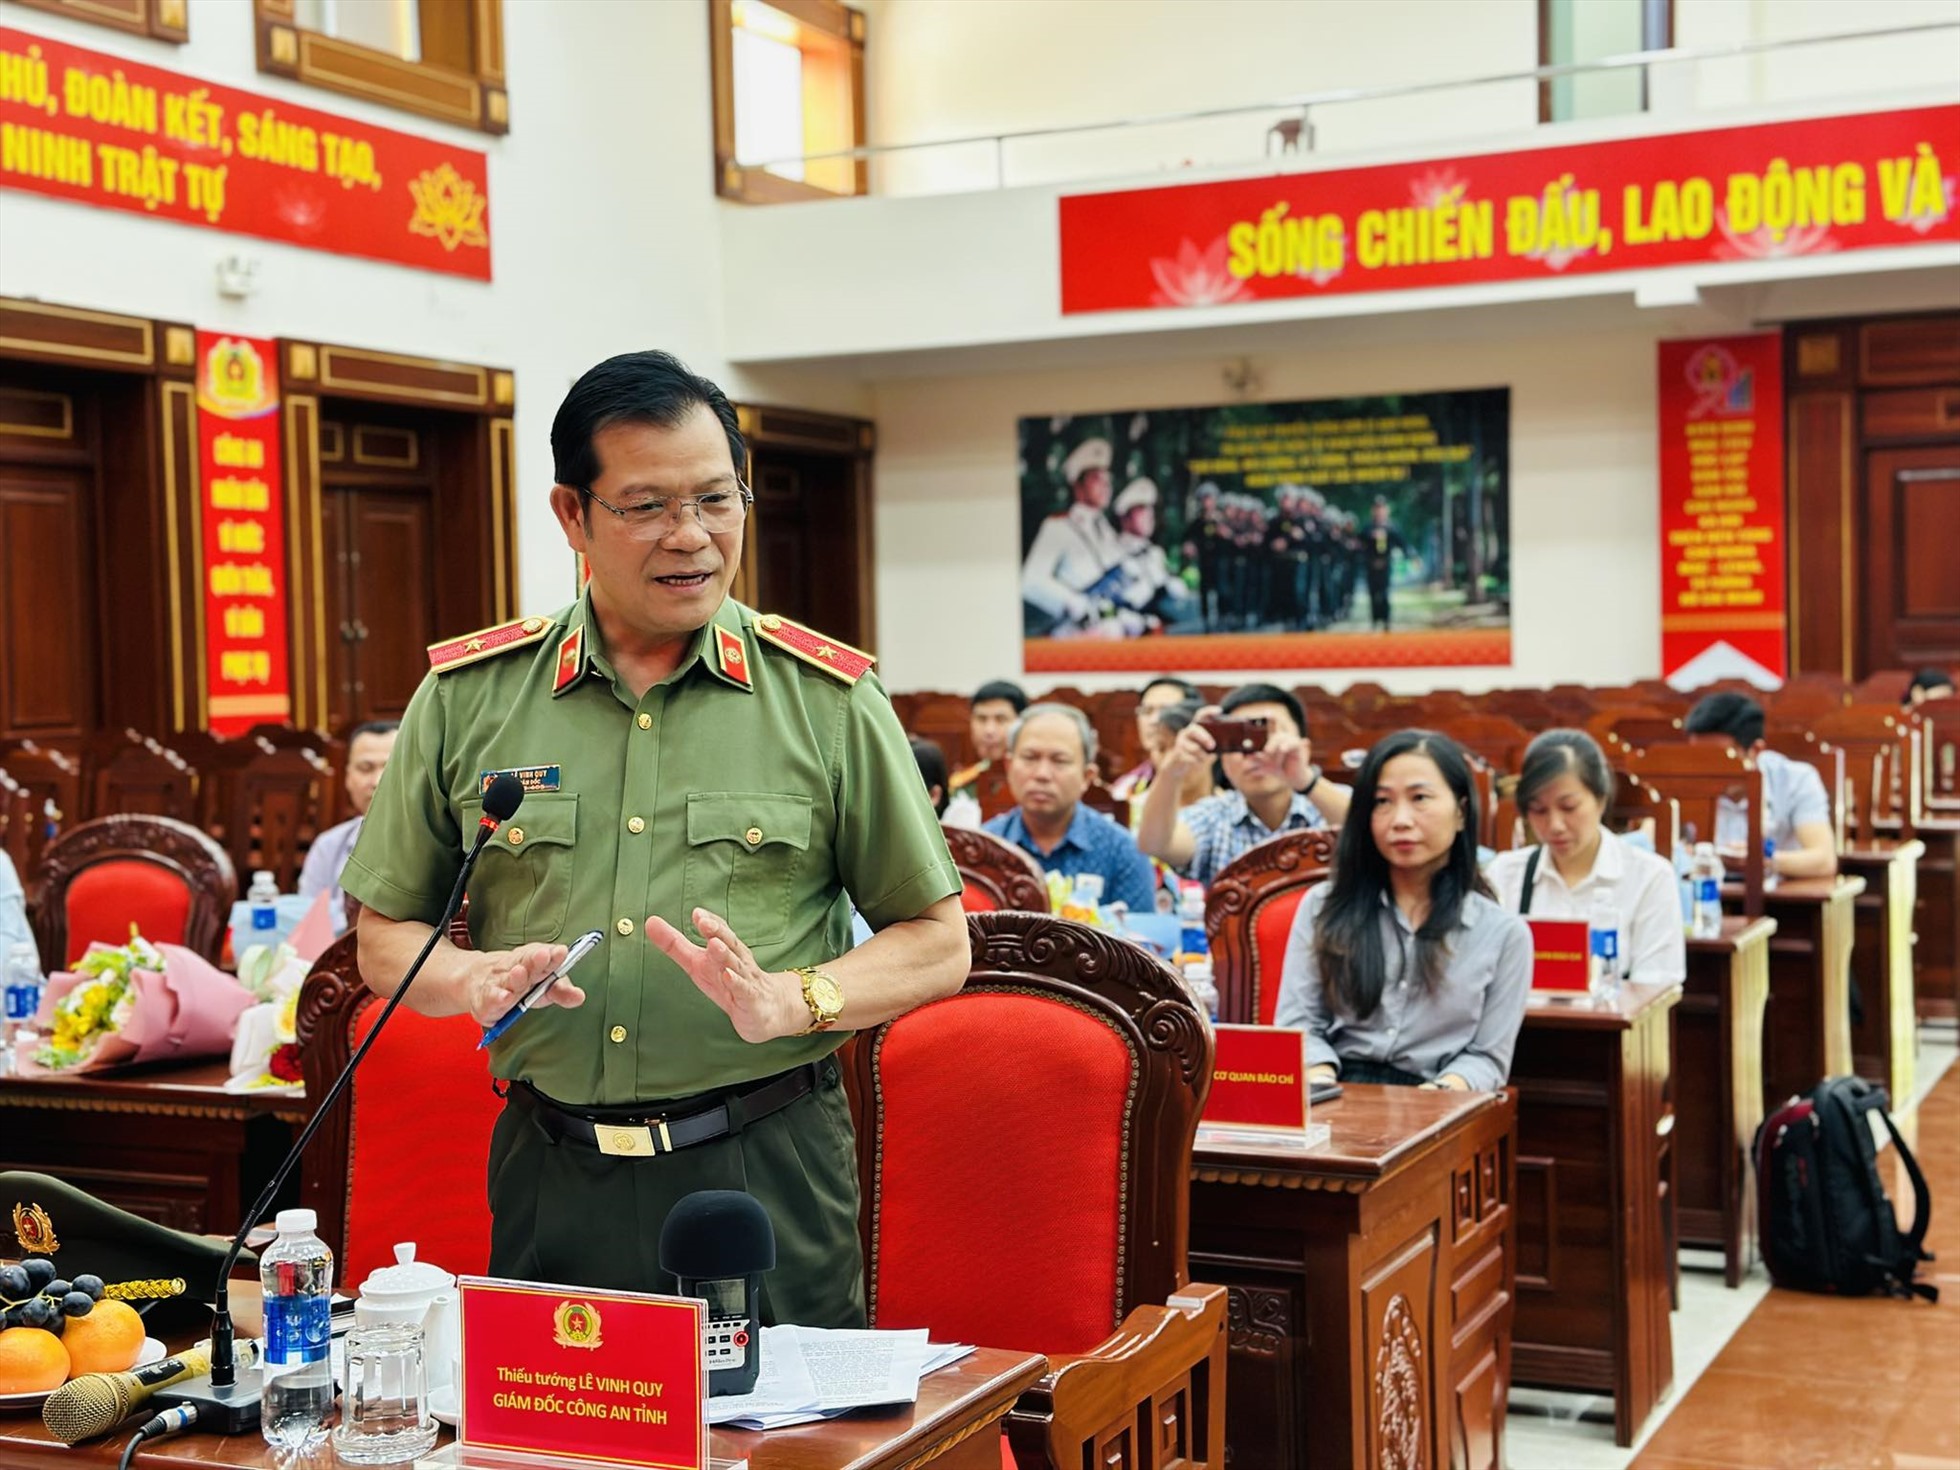 Thiếu tướng Lê Vinh Quy - Giám đốc Công an tỉnh Đắk Lắk phát biểu trong buổi gặp mặt các cơ quan báo chí nhân dịp kỷ niệm 98 năm ngày Báo chí Cách mạng Việt Nam. Ảnh: Bảo Trung